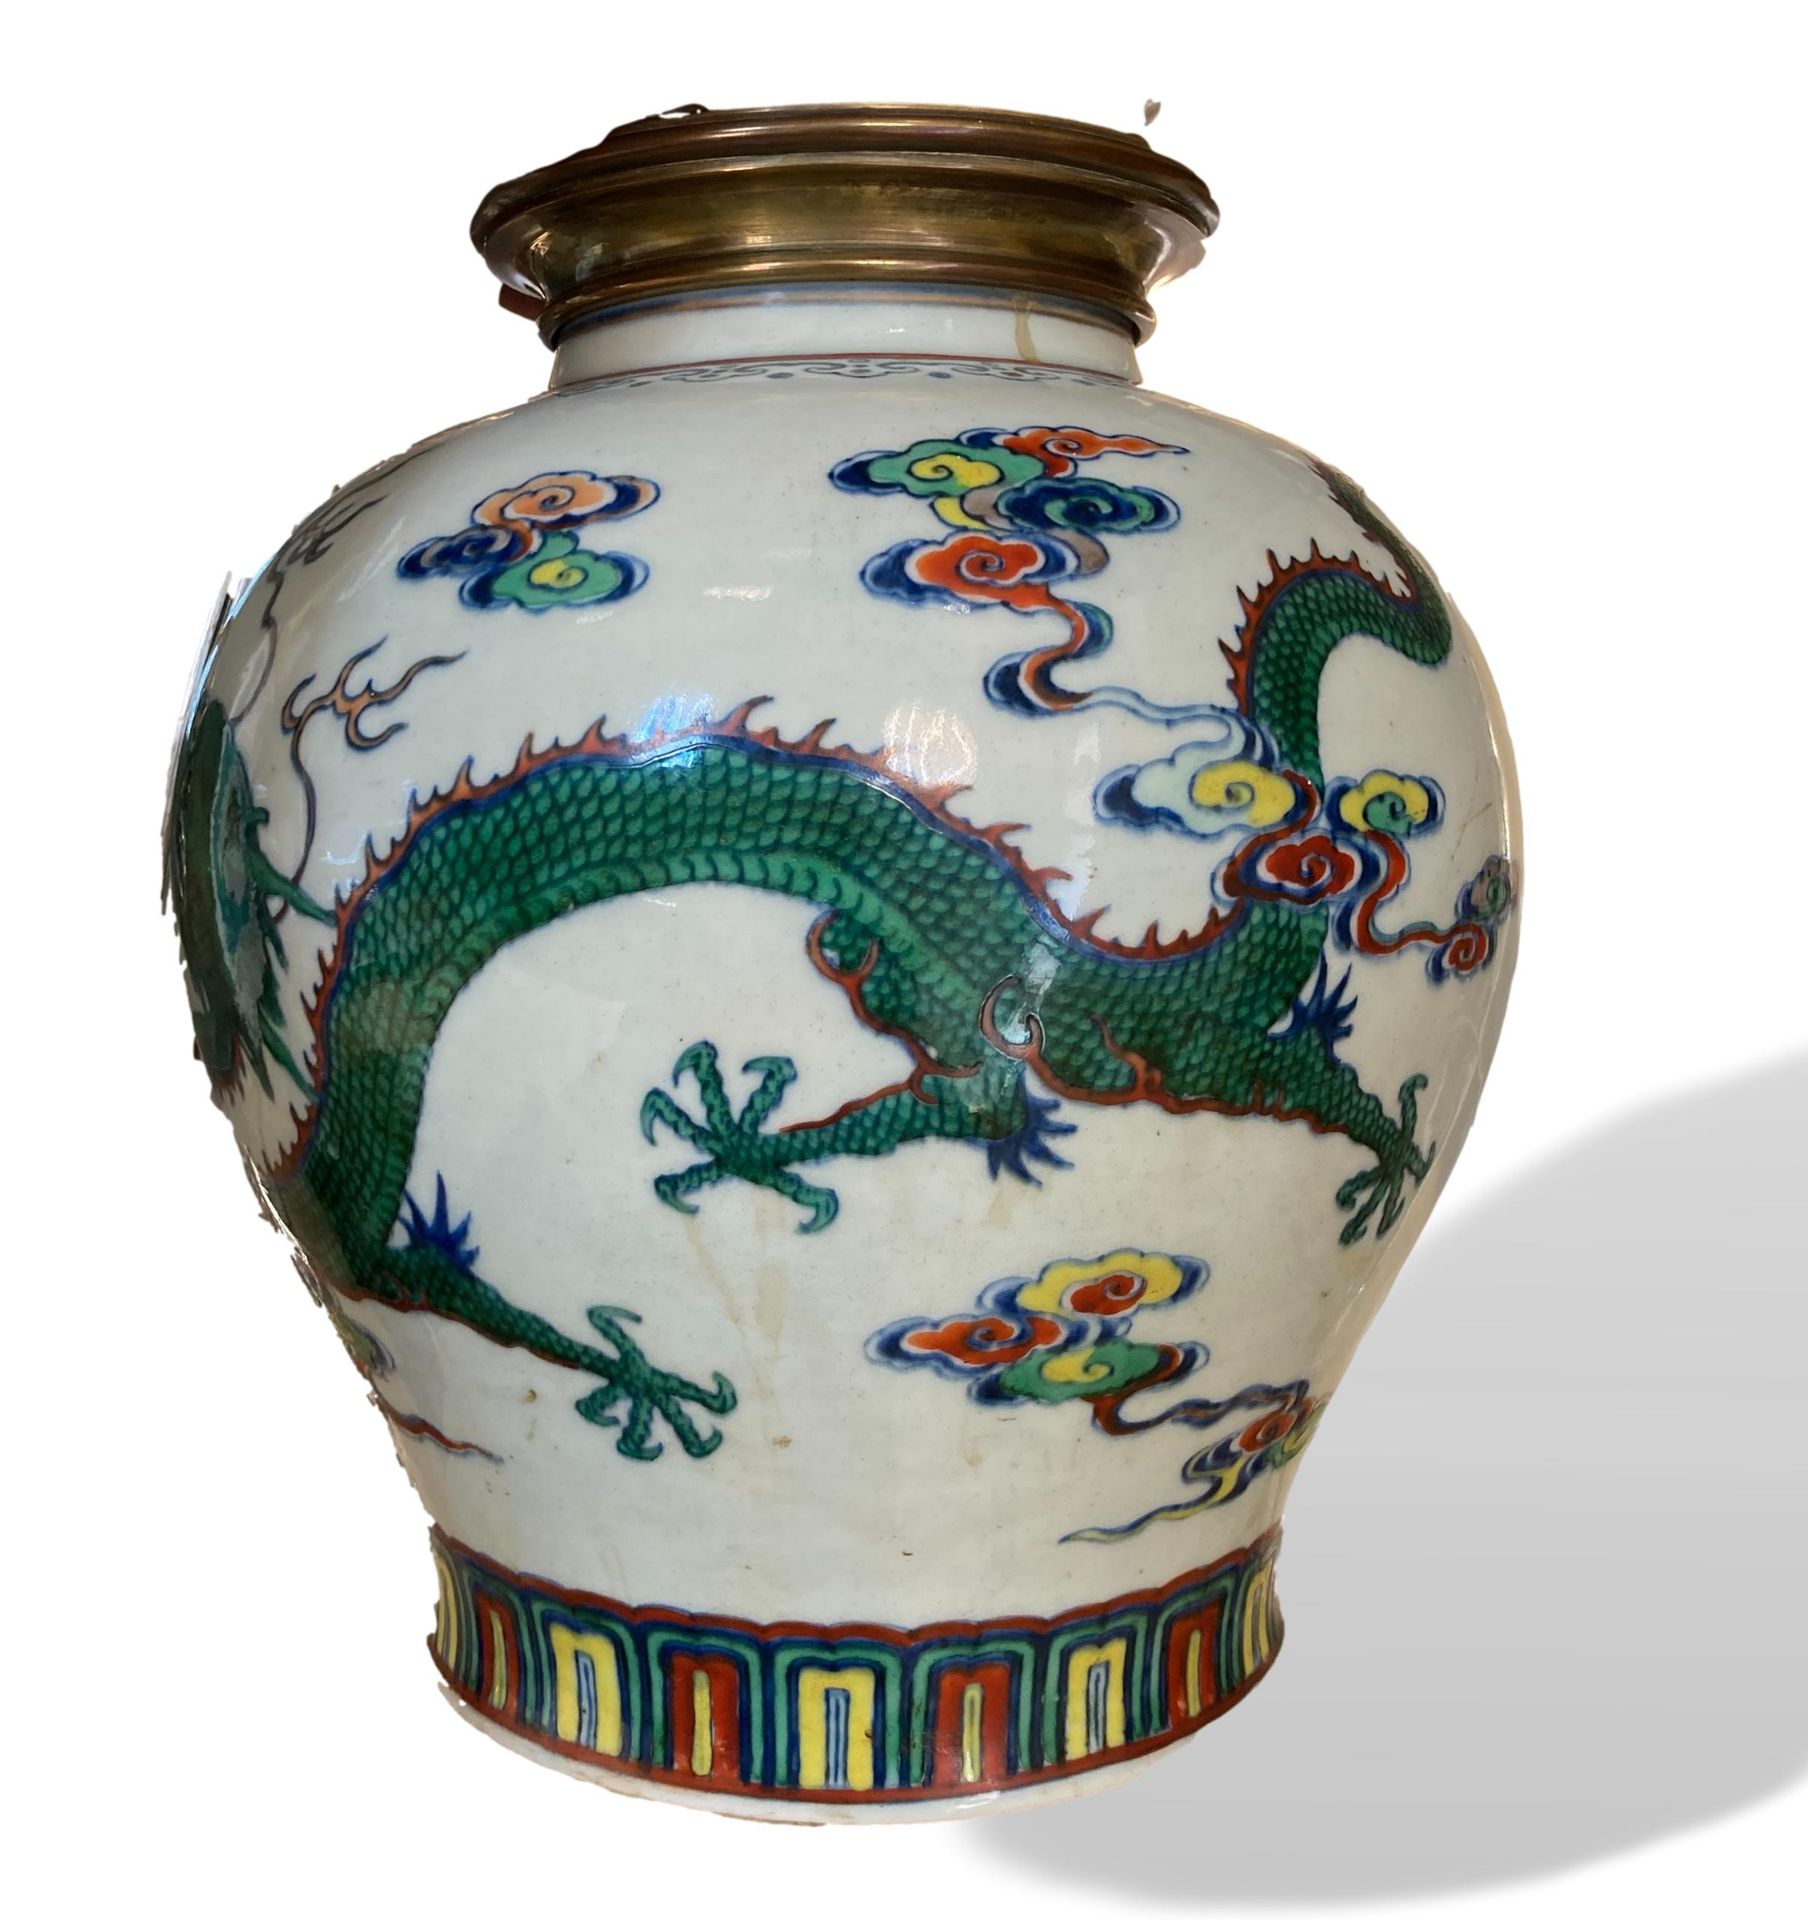 Null 一个五彩瓷器和珐琅彩球状花瓶，饰有云纹中的龙和凤。

中国，光绪年间，19世纪

(底部和侧面穿孔；安装为灯)

H.25 cm - D. 23 cm